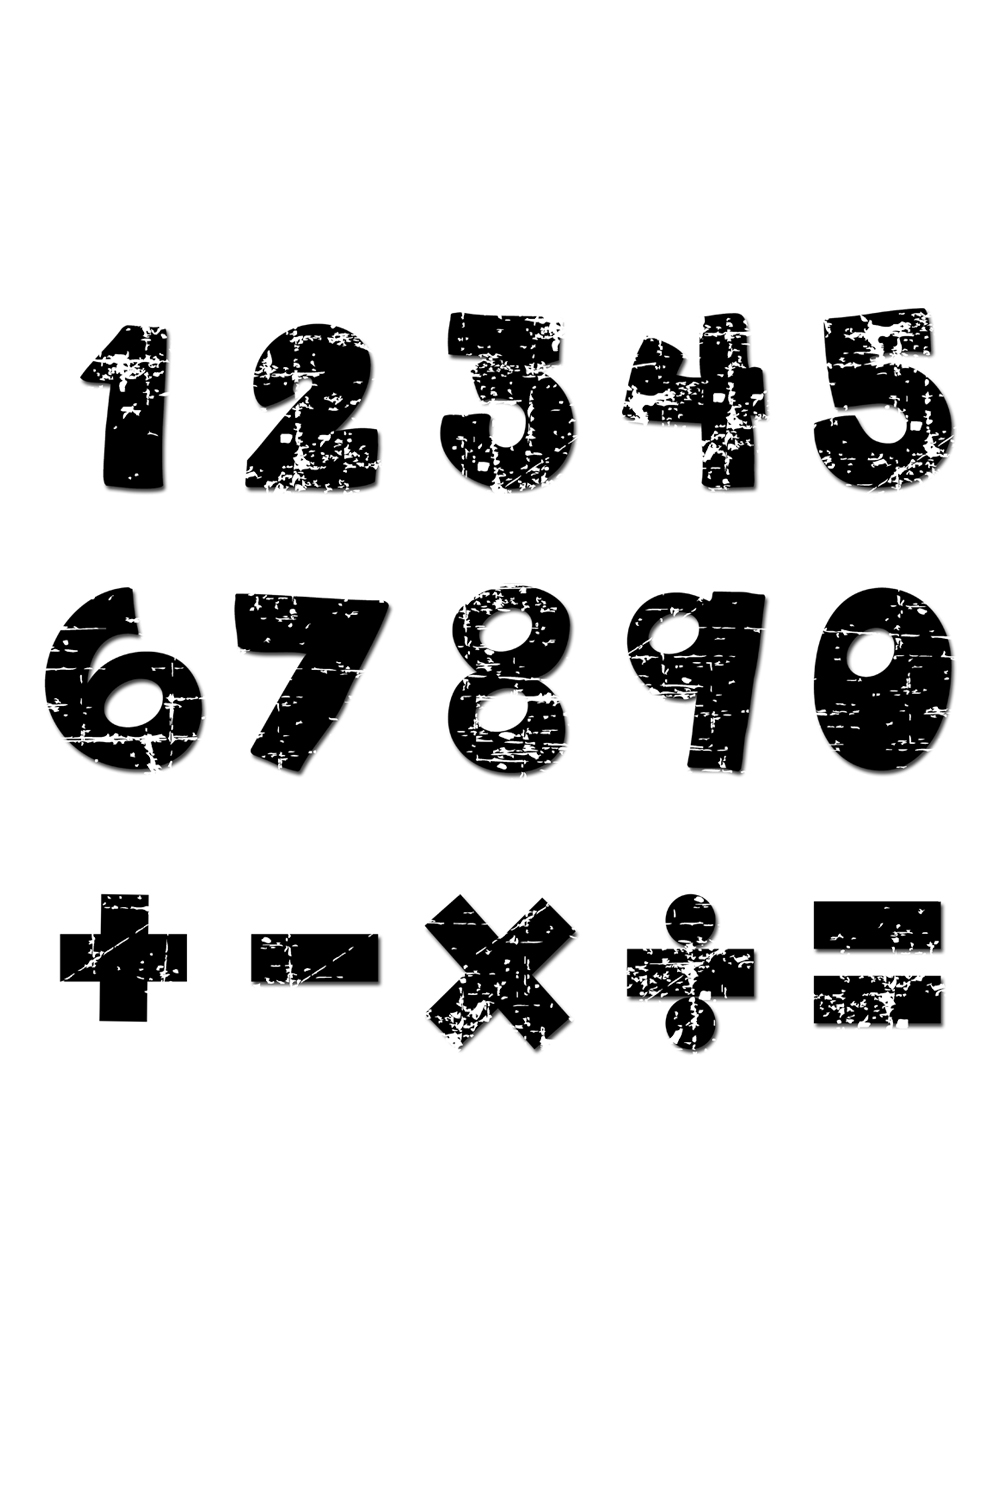 Black Math Number Old Vintage Set pinterest preview image.